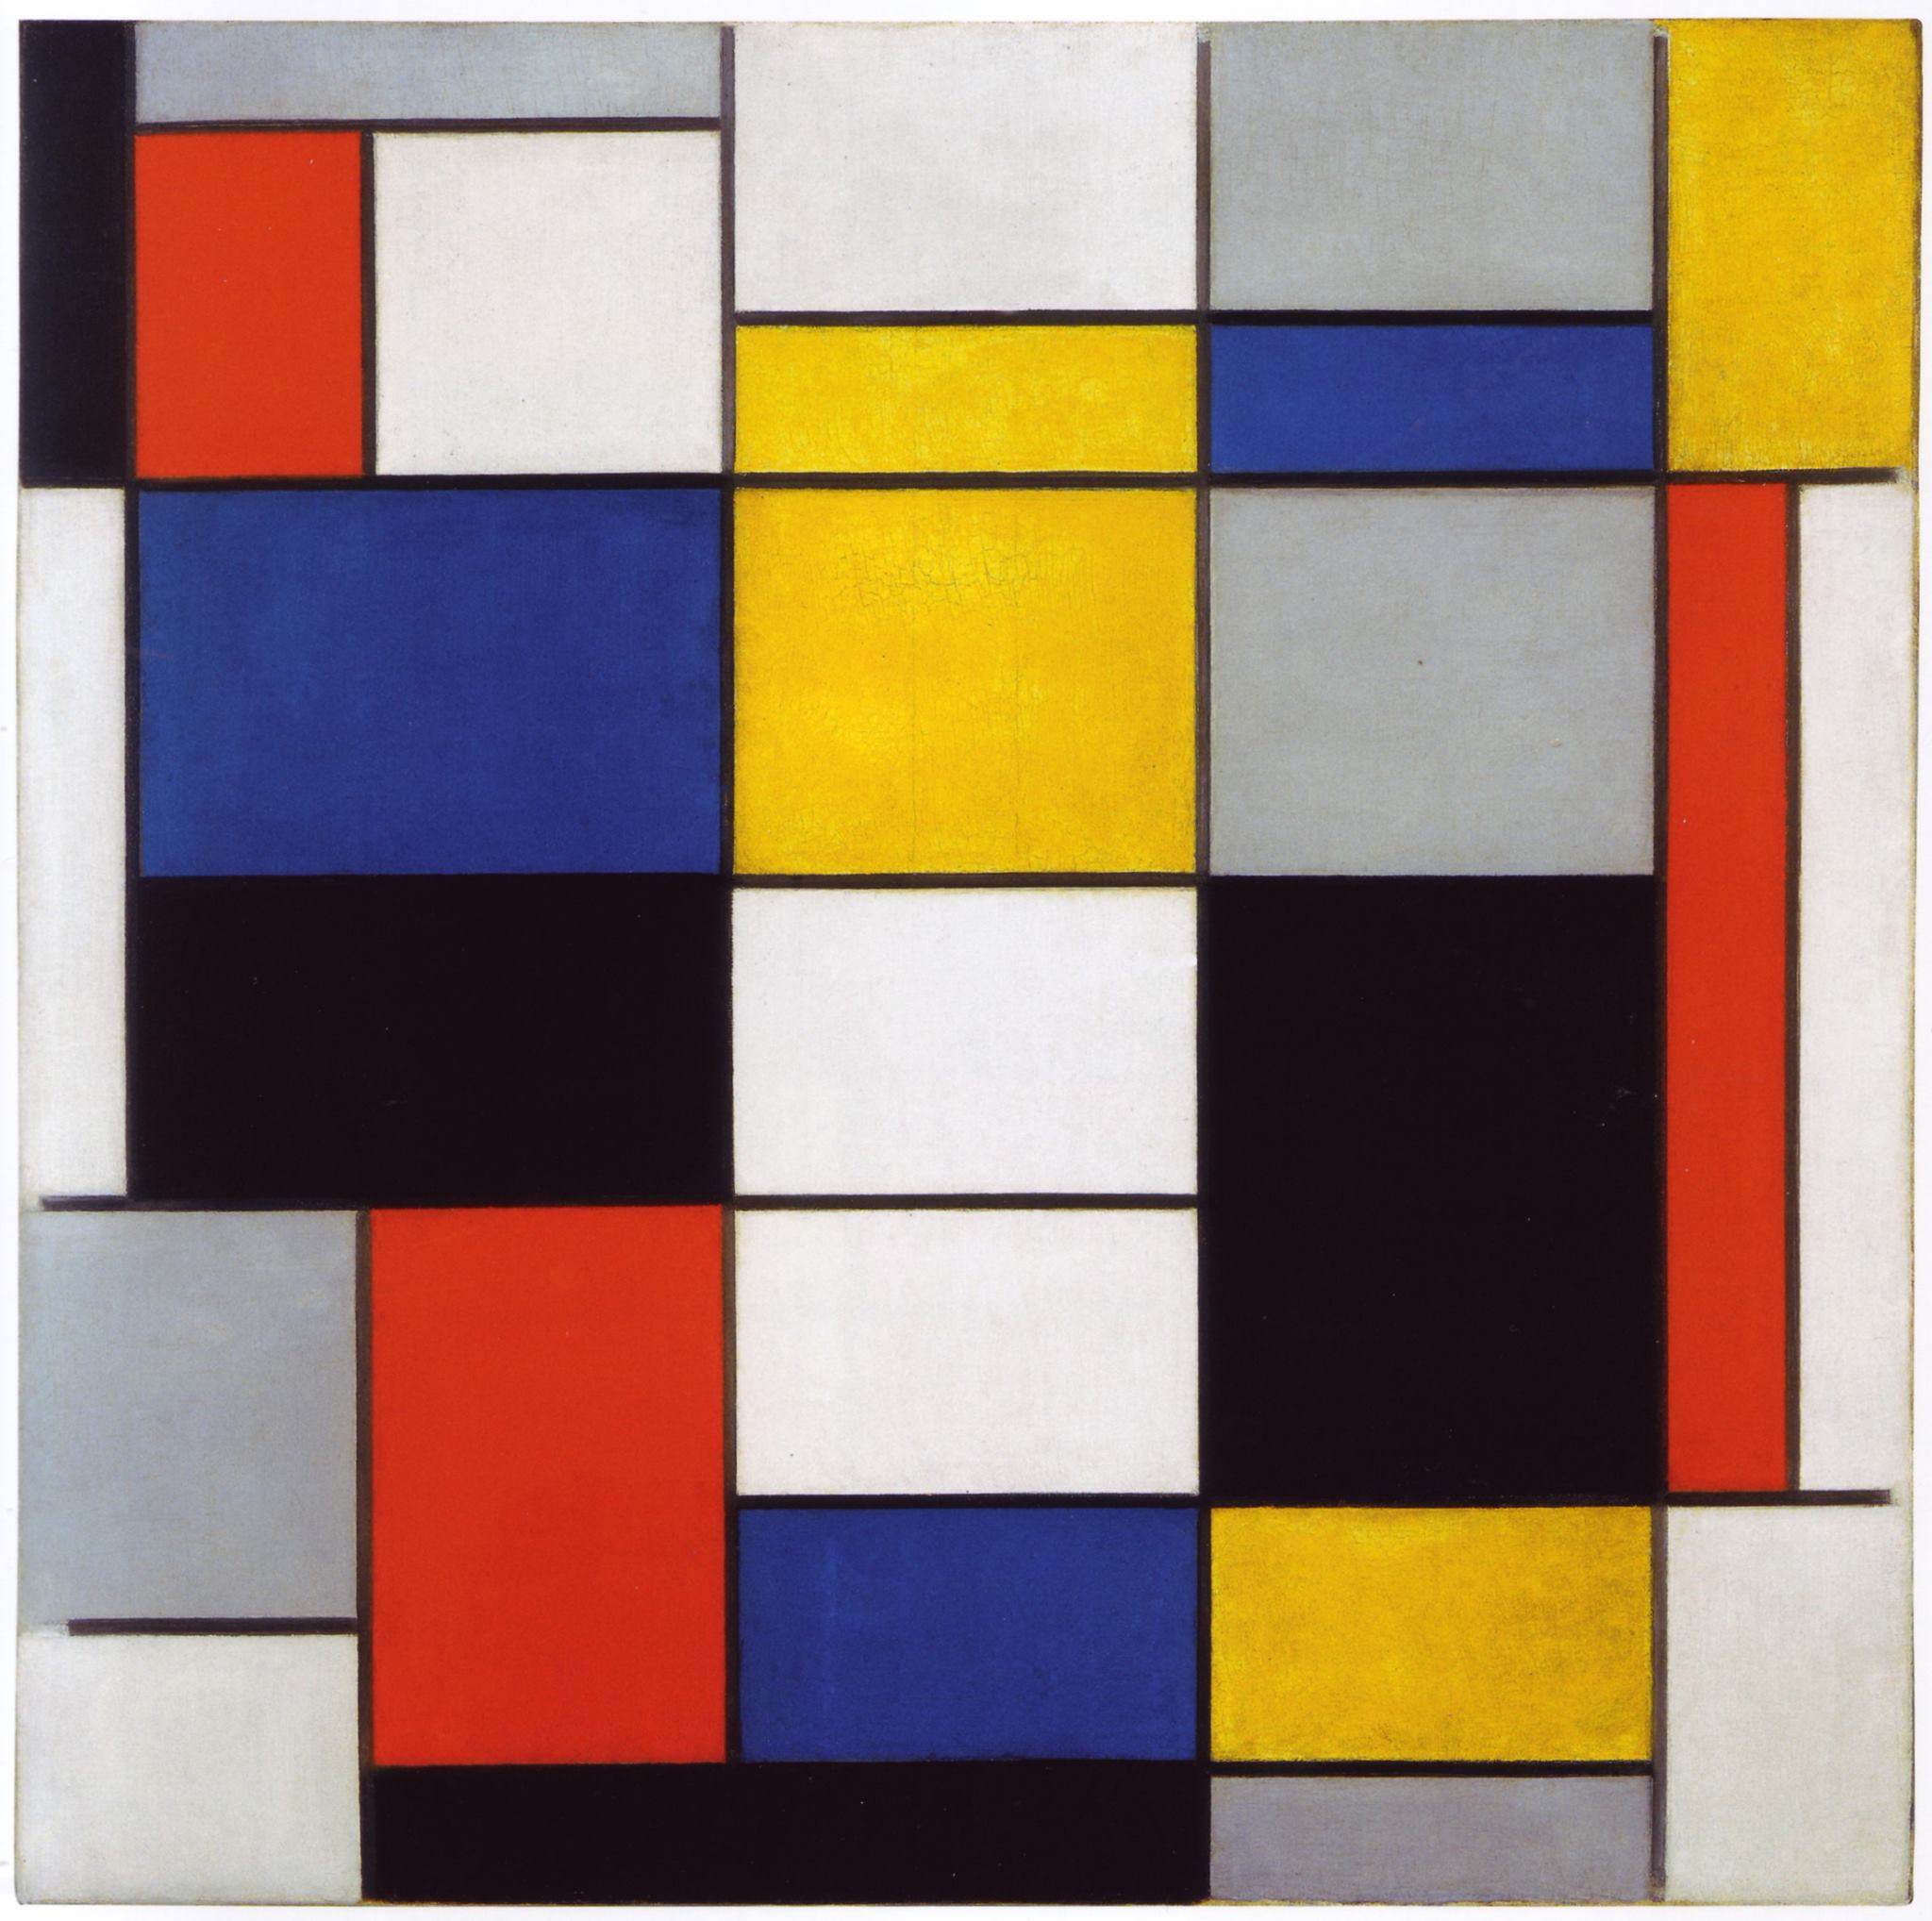 Chi era Piet Mondrian